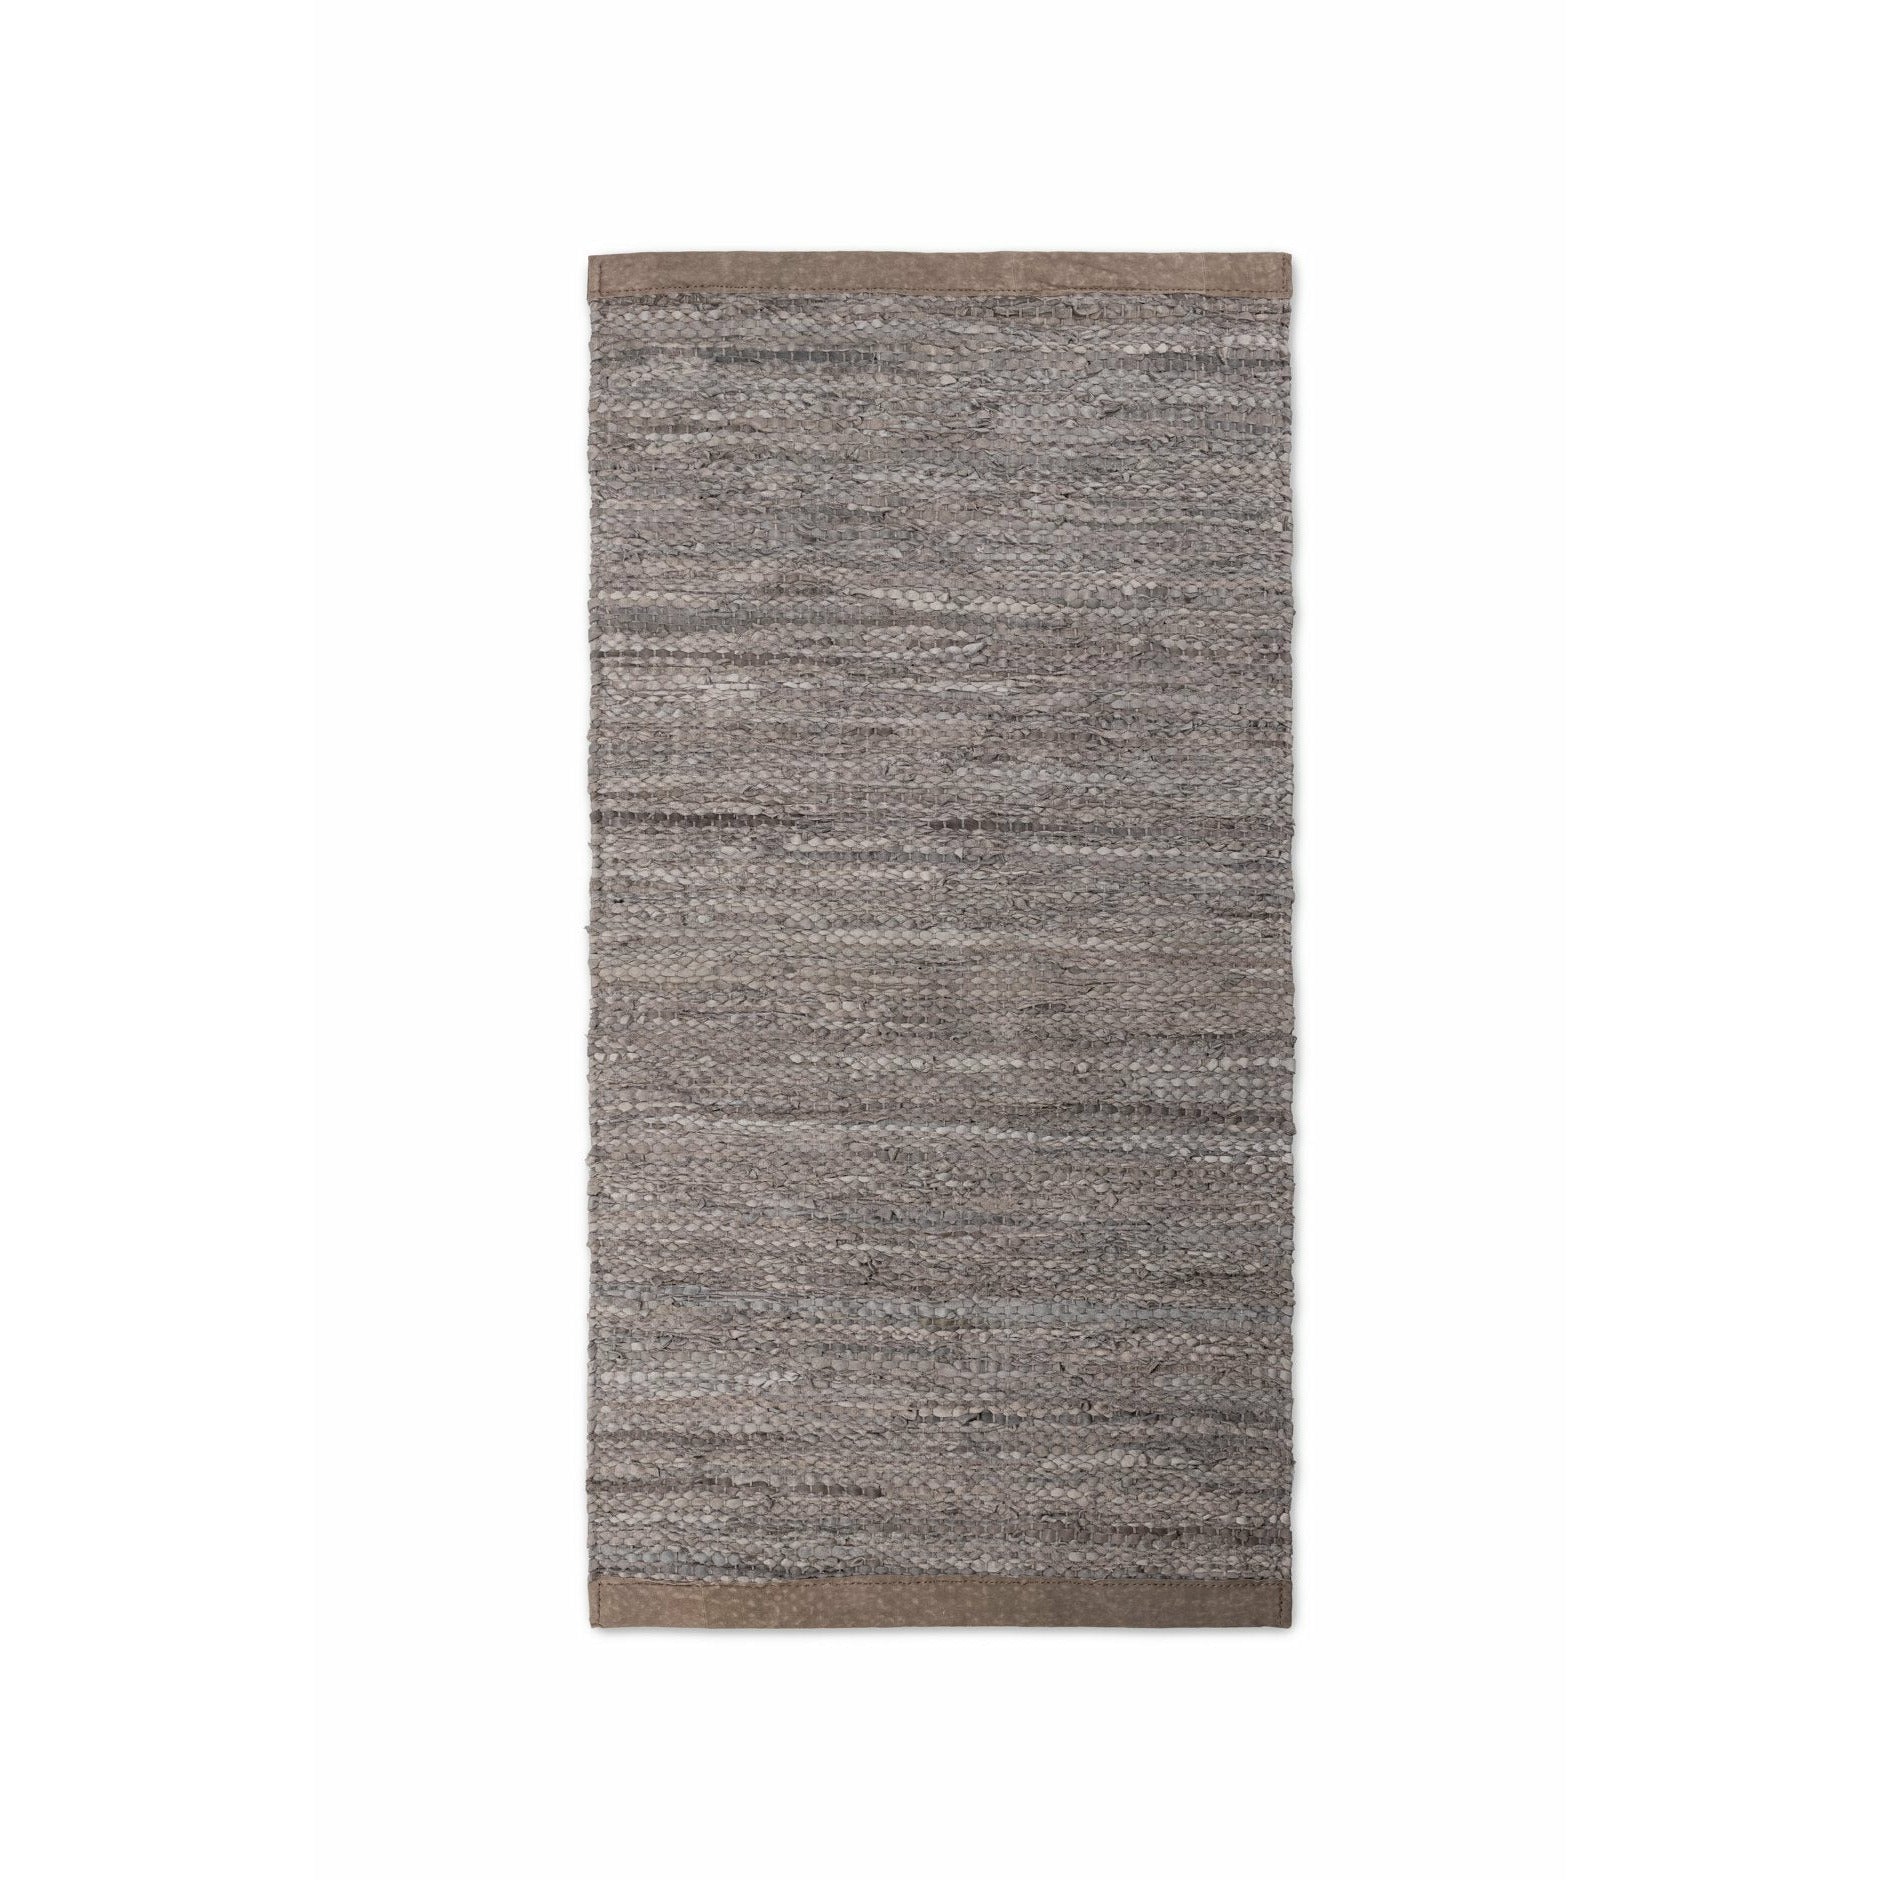 Tappeto in legno con moquette in pelle solida, 200 x 300 cm